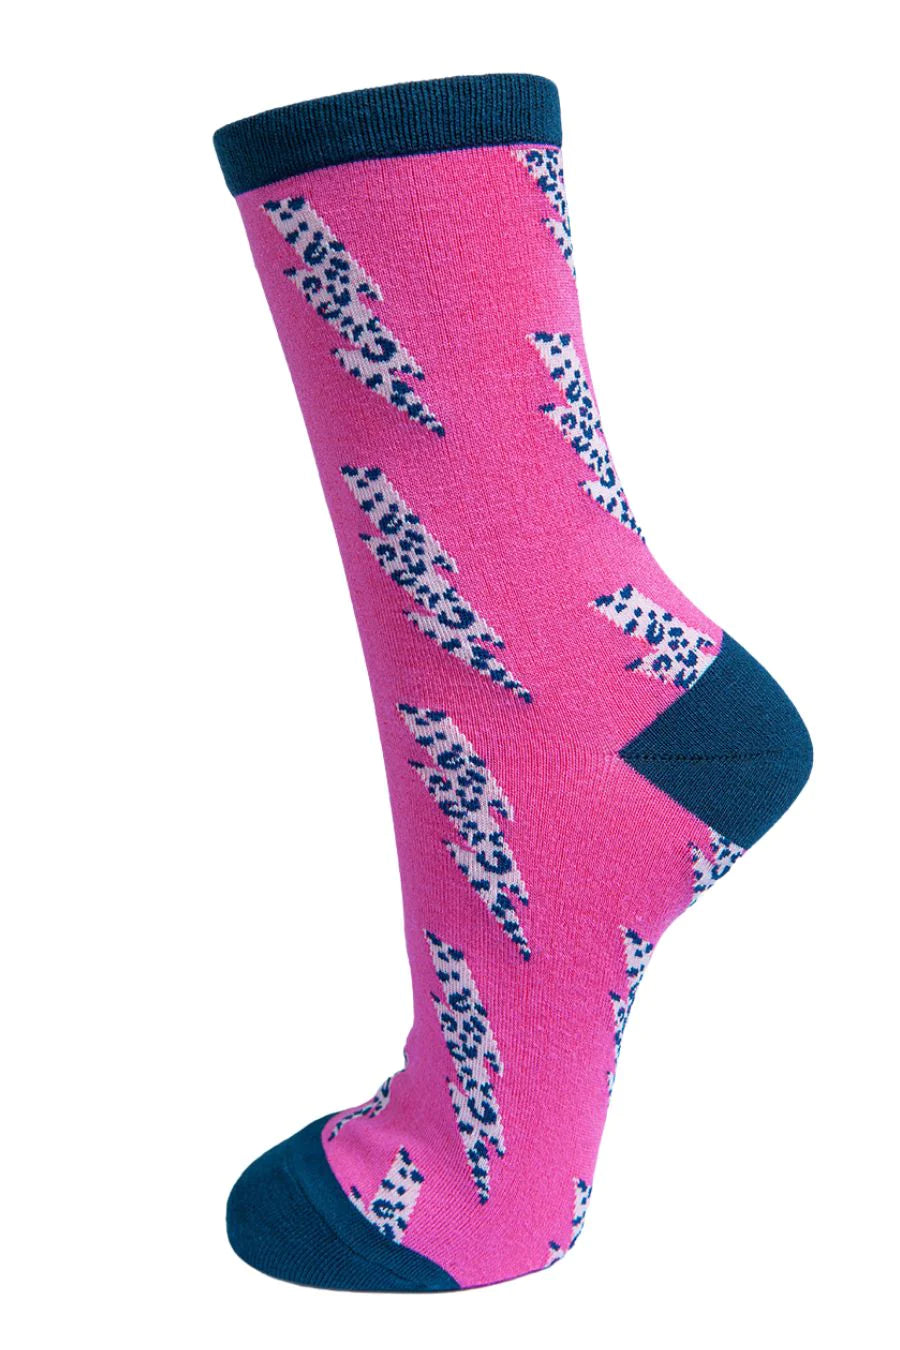 Hot Pink & Navy Lightning Bolt Socks